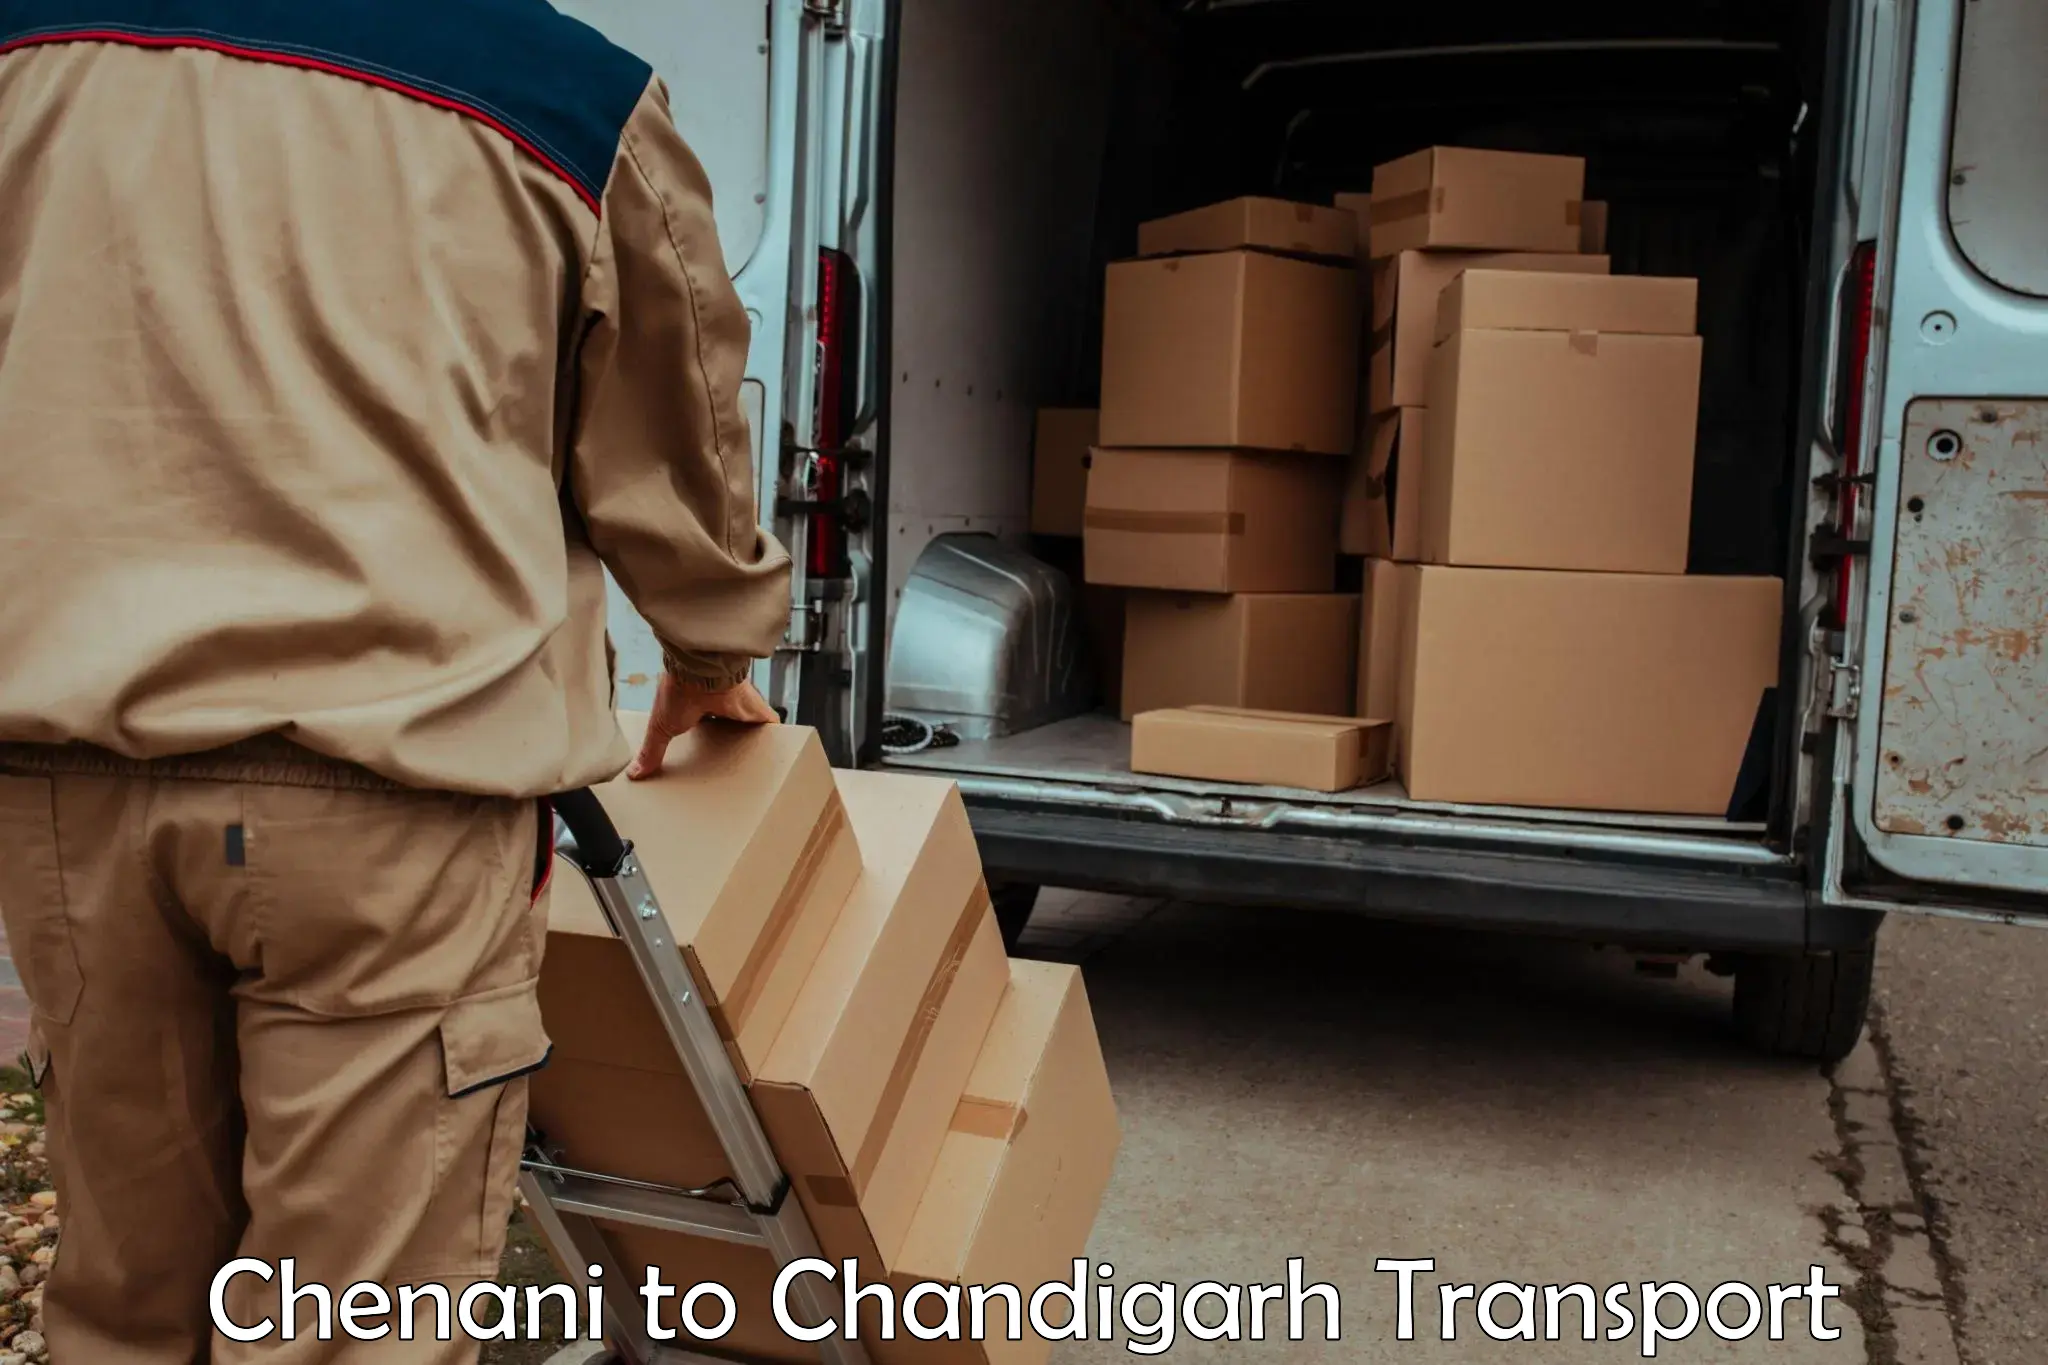 Pick up transport service Chenani to Chandigarh